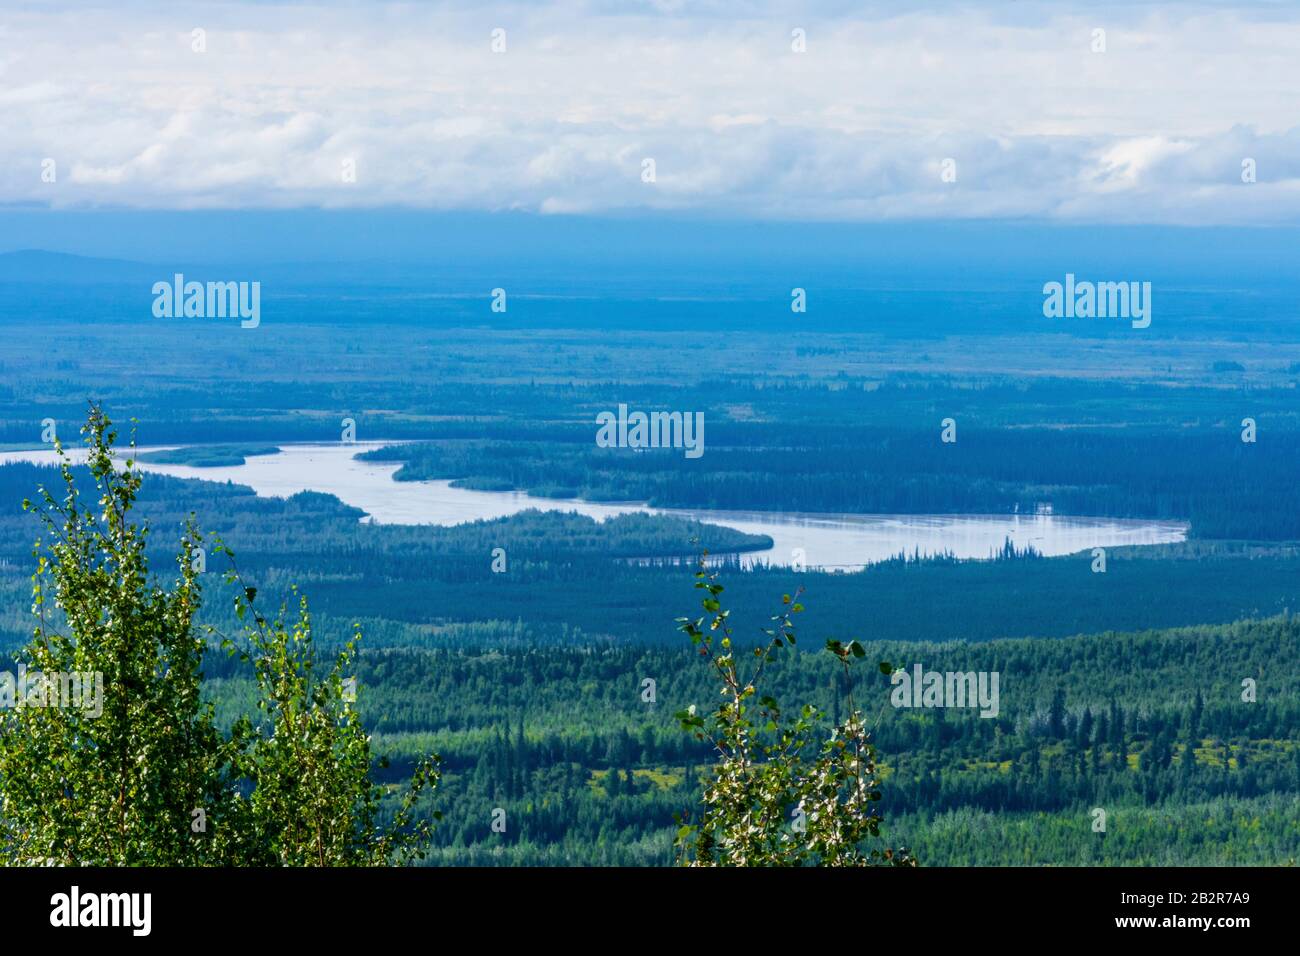 Landschaftsfotografie in Alaska, letzte Grenze, malerischer Blick auf Seen, Ausflug zur Fairbanks Alaska Road, Unberührte Wildnis, Pazifische Nordwestberge Stockfoto